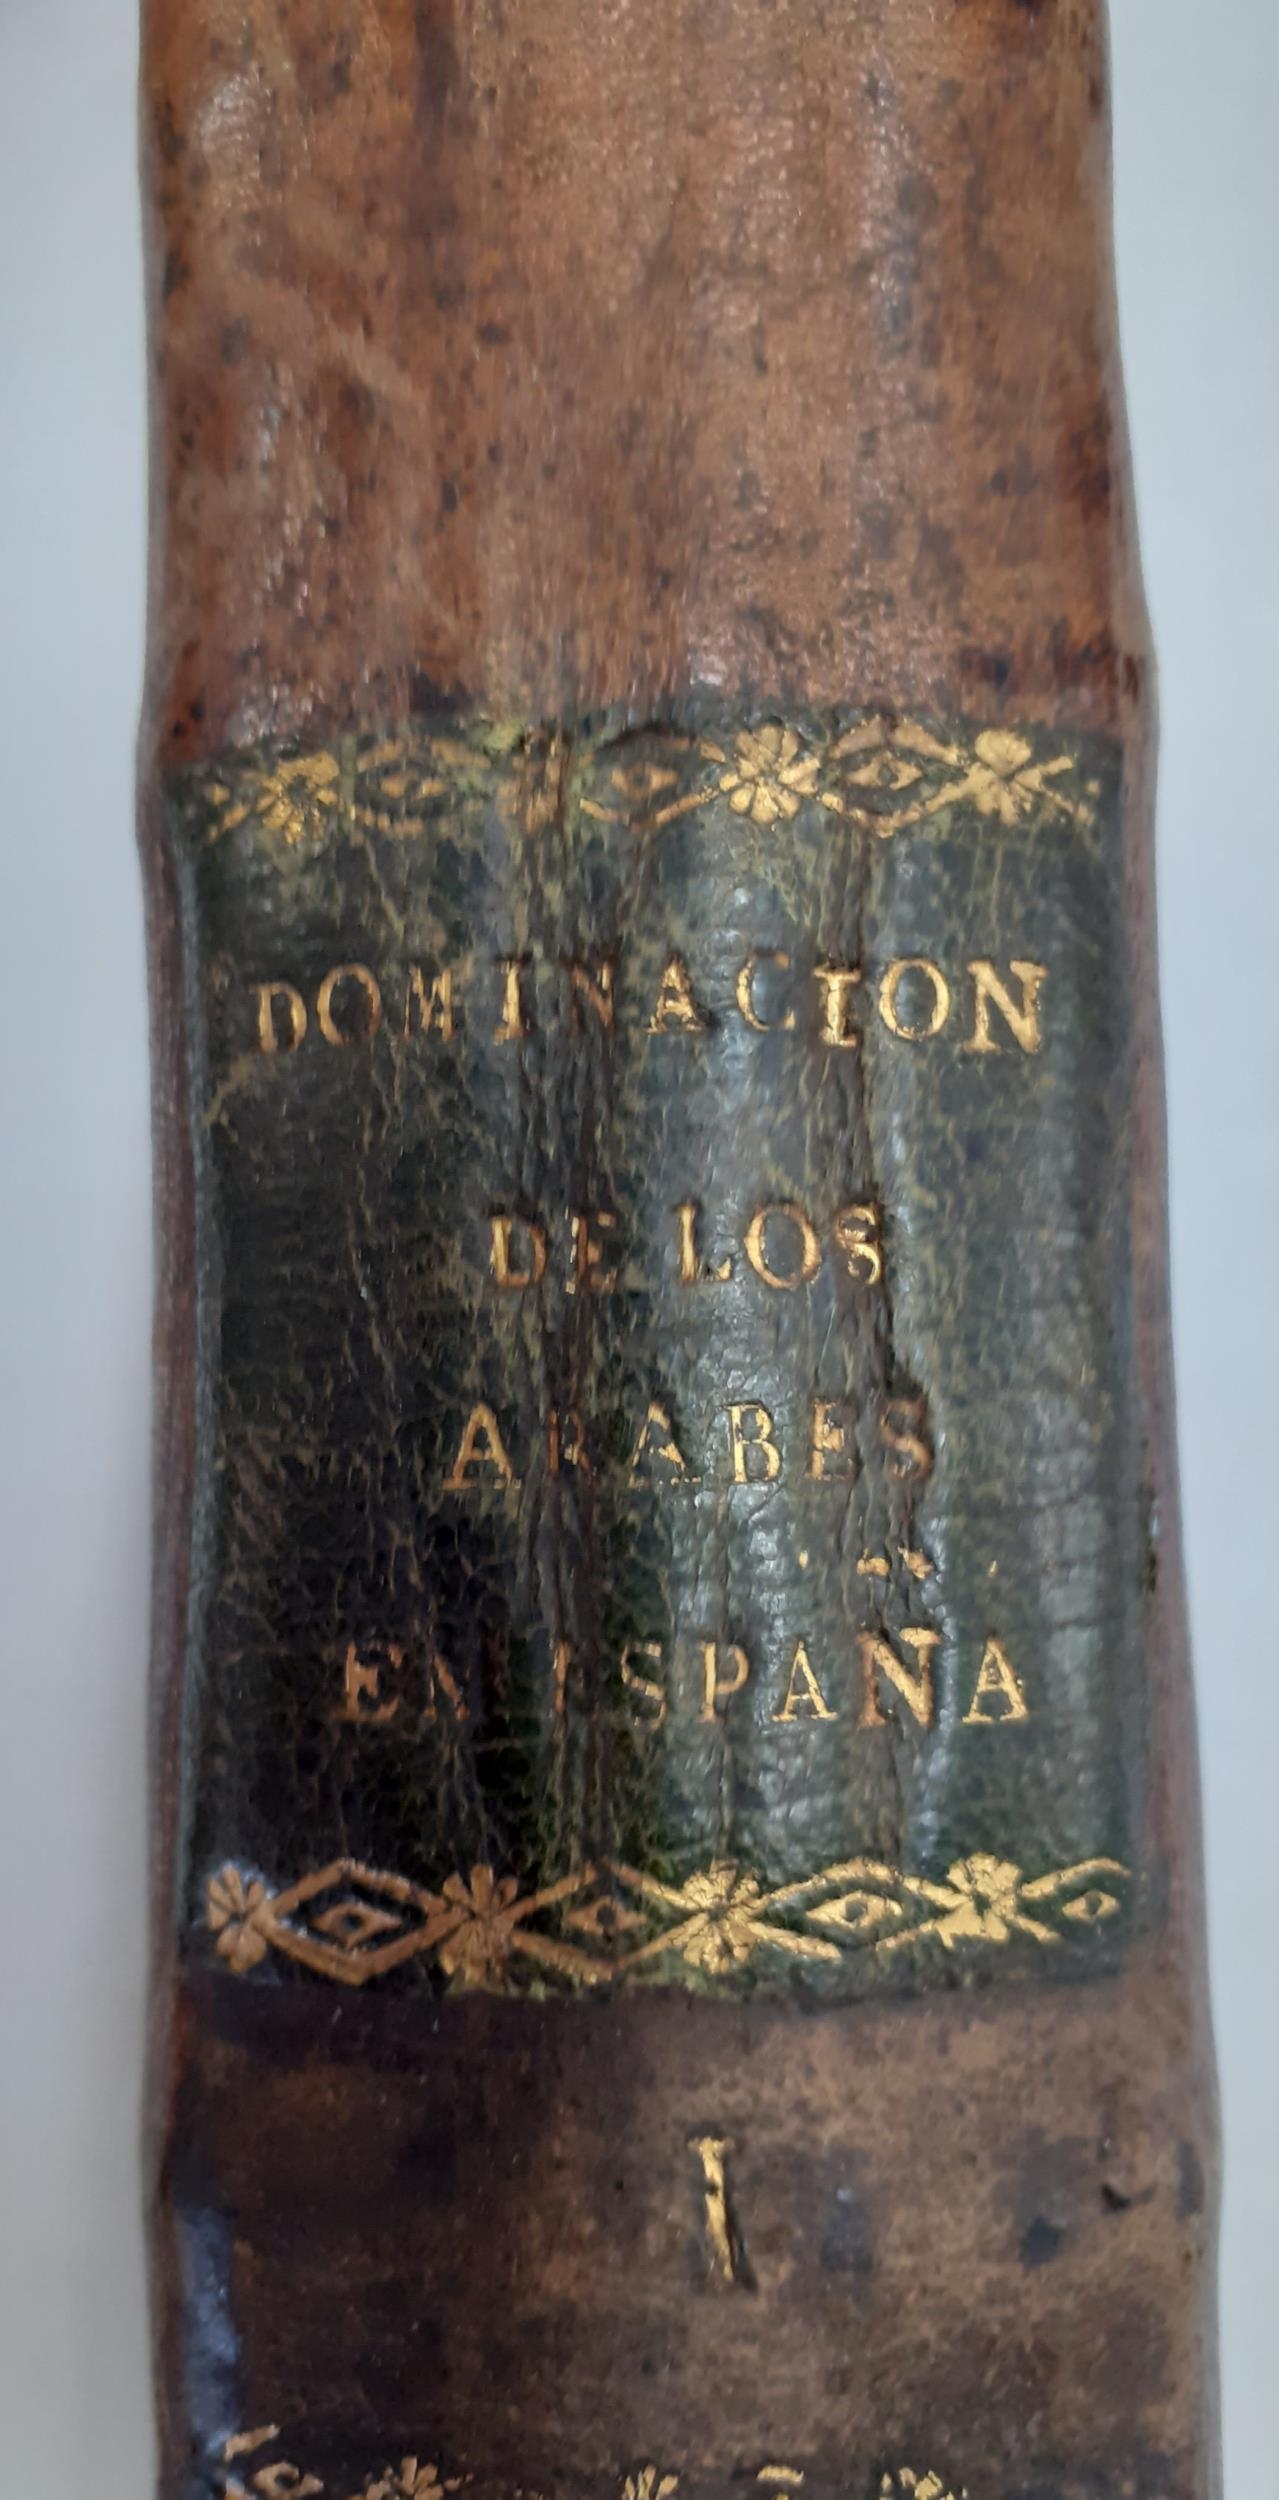 Books - 3 volumes of 1820 'Historia de la Dominaclon de lo Arabes' in Spanish for the doctor Don - Image 7 of 7